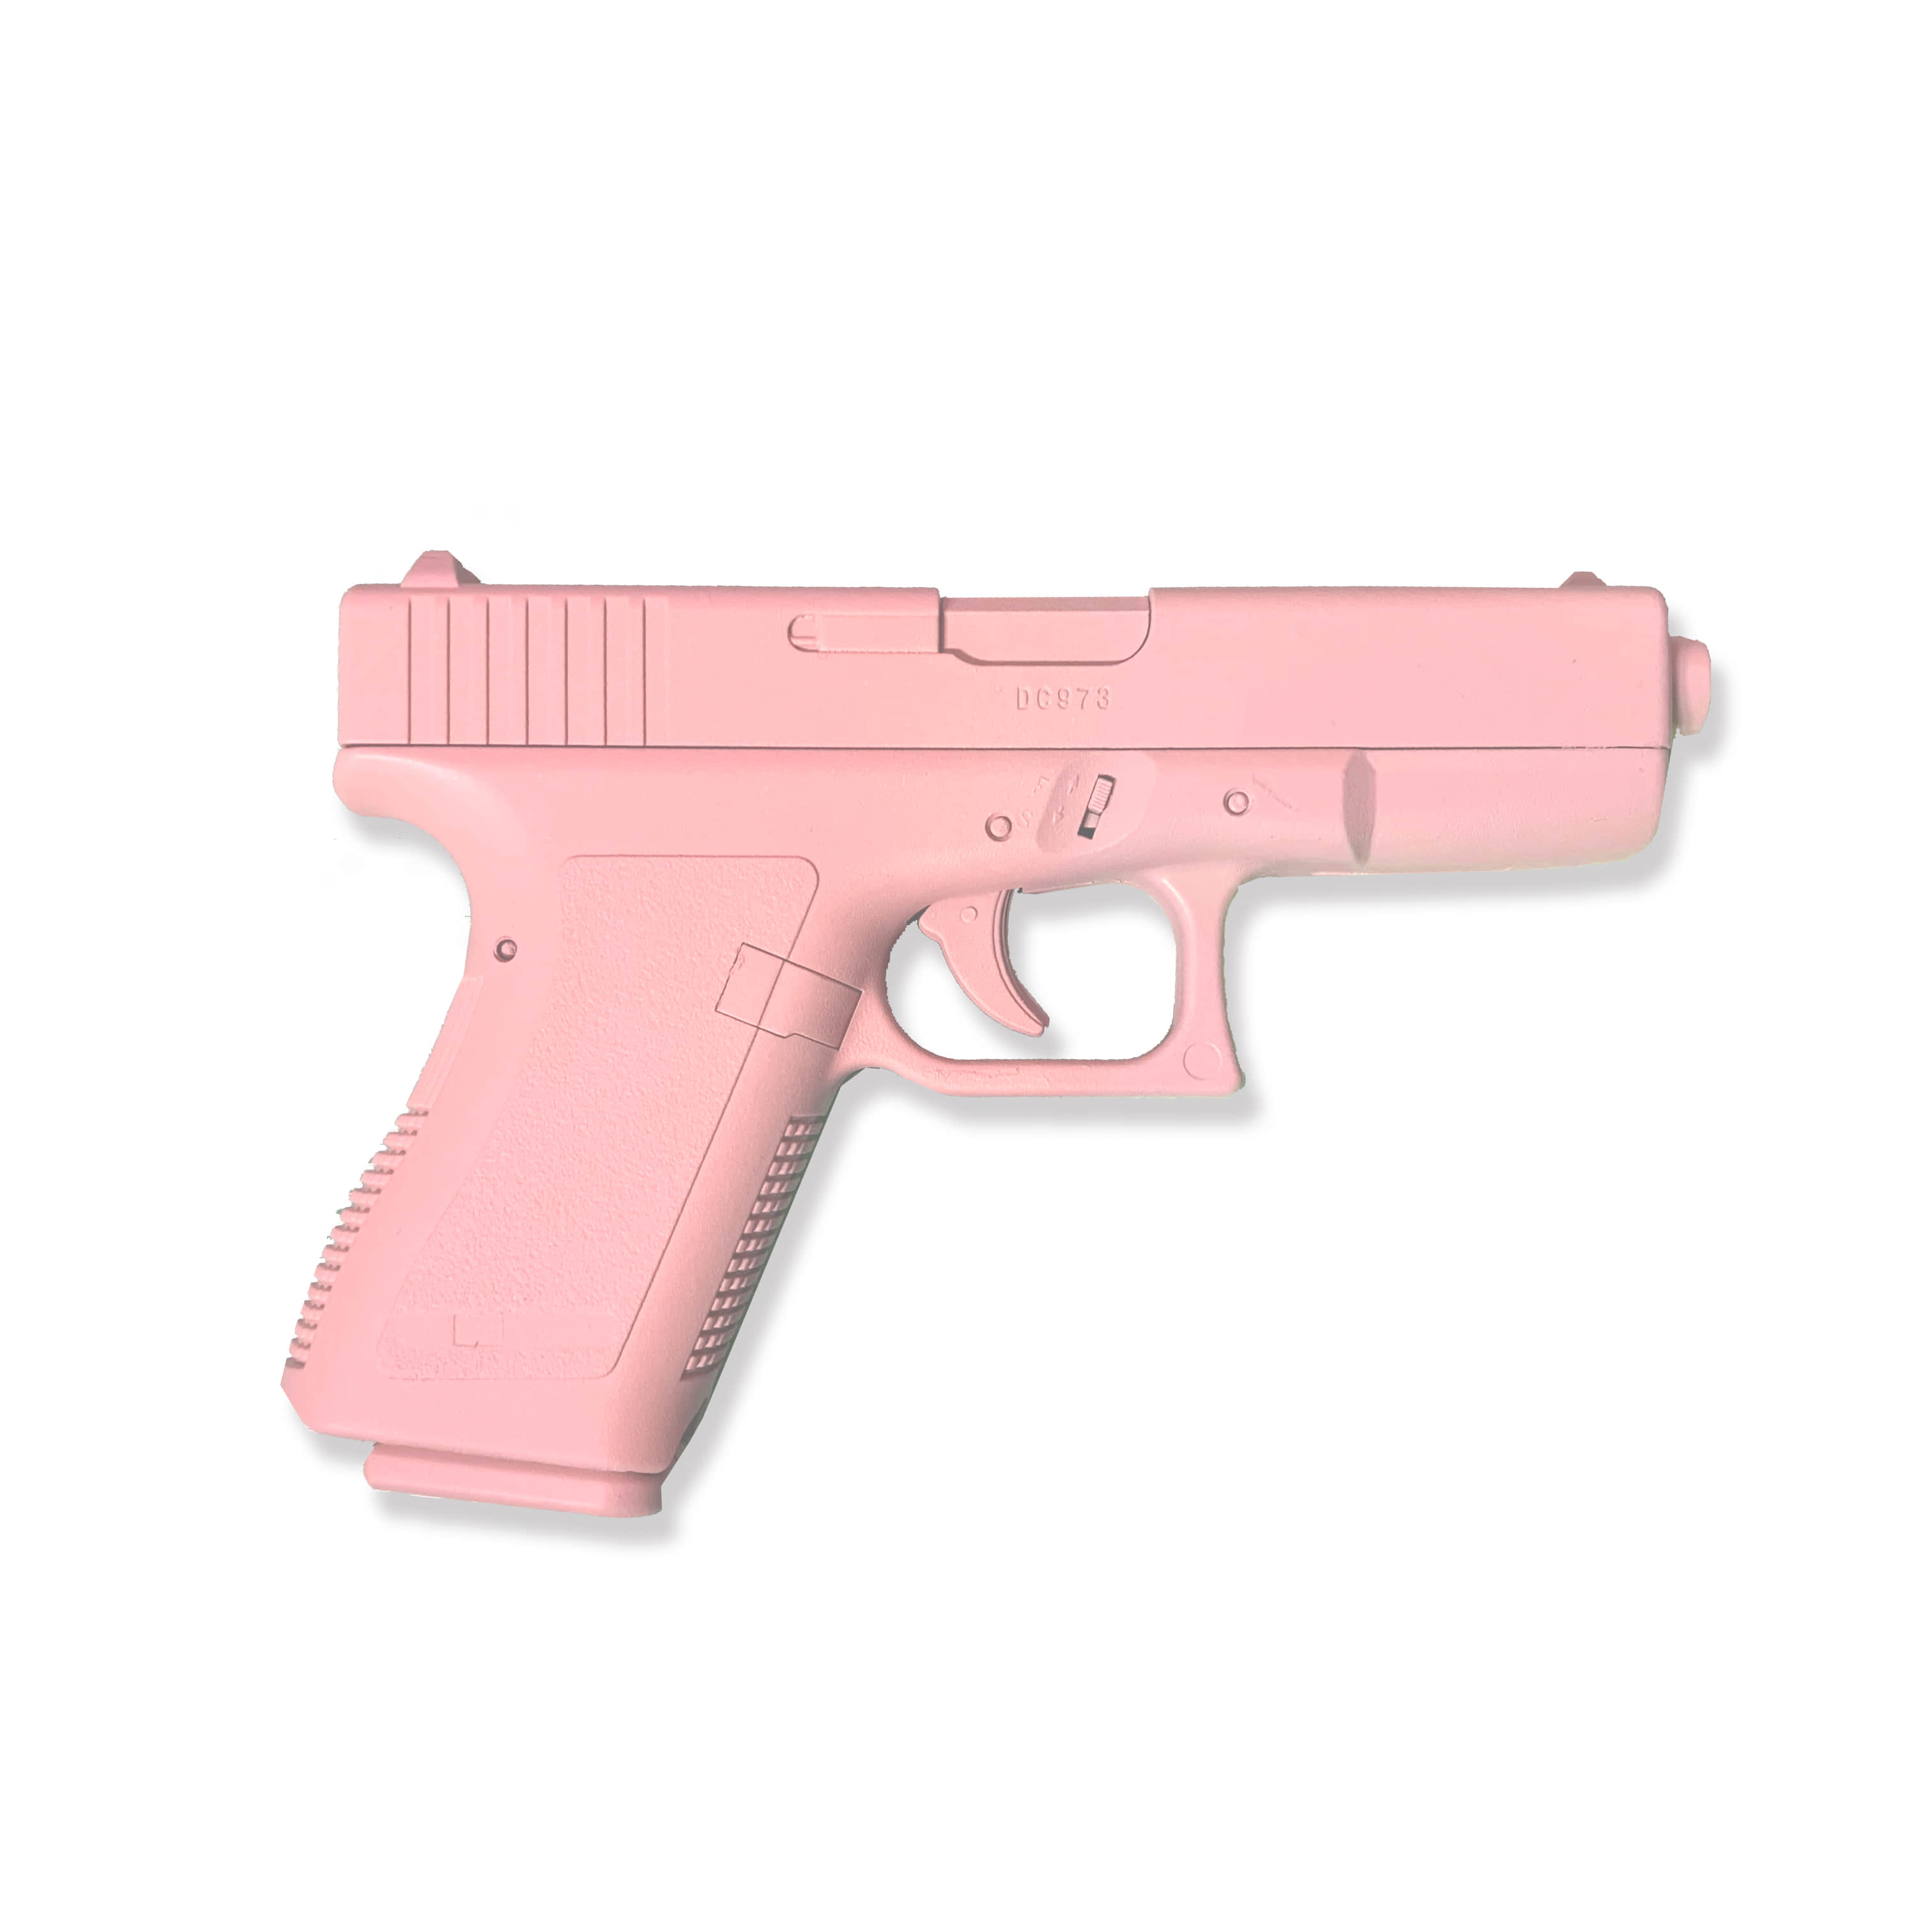 [NEWX2 제작] 핑크 총 비비탄 장난감 코스프레 이모티콘총 도색 핑크색 찰영용